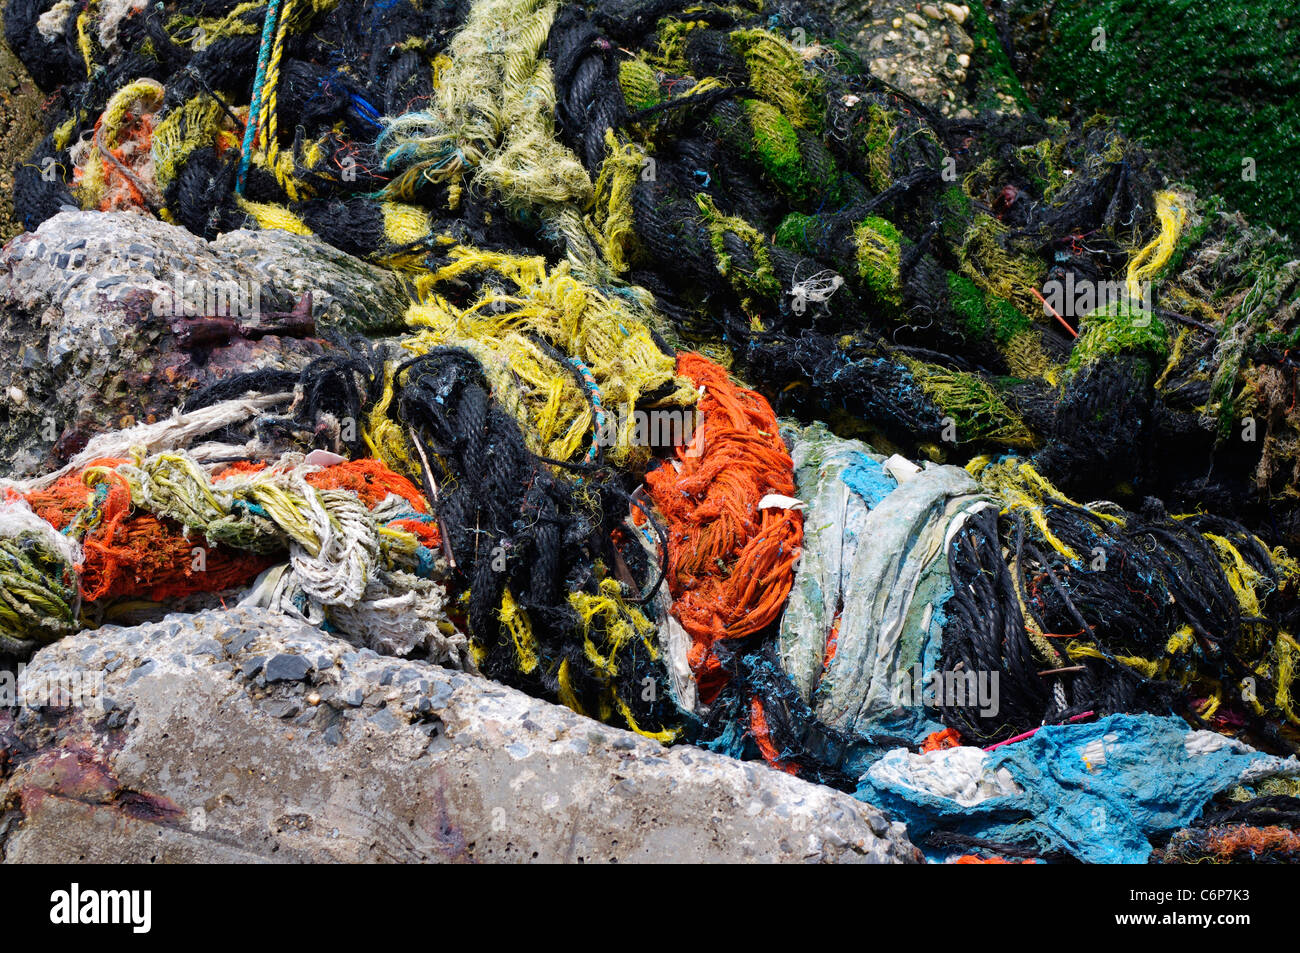 Marine flotsam and jetsam washed up on island seawall Stock Photo